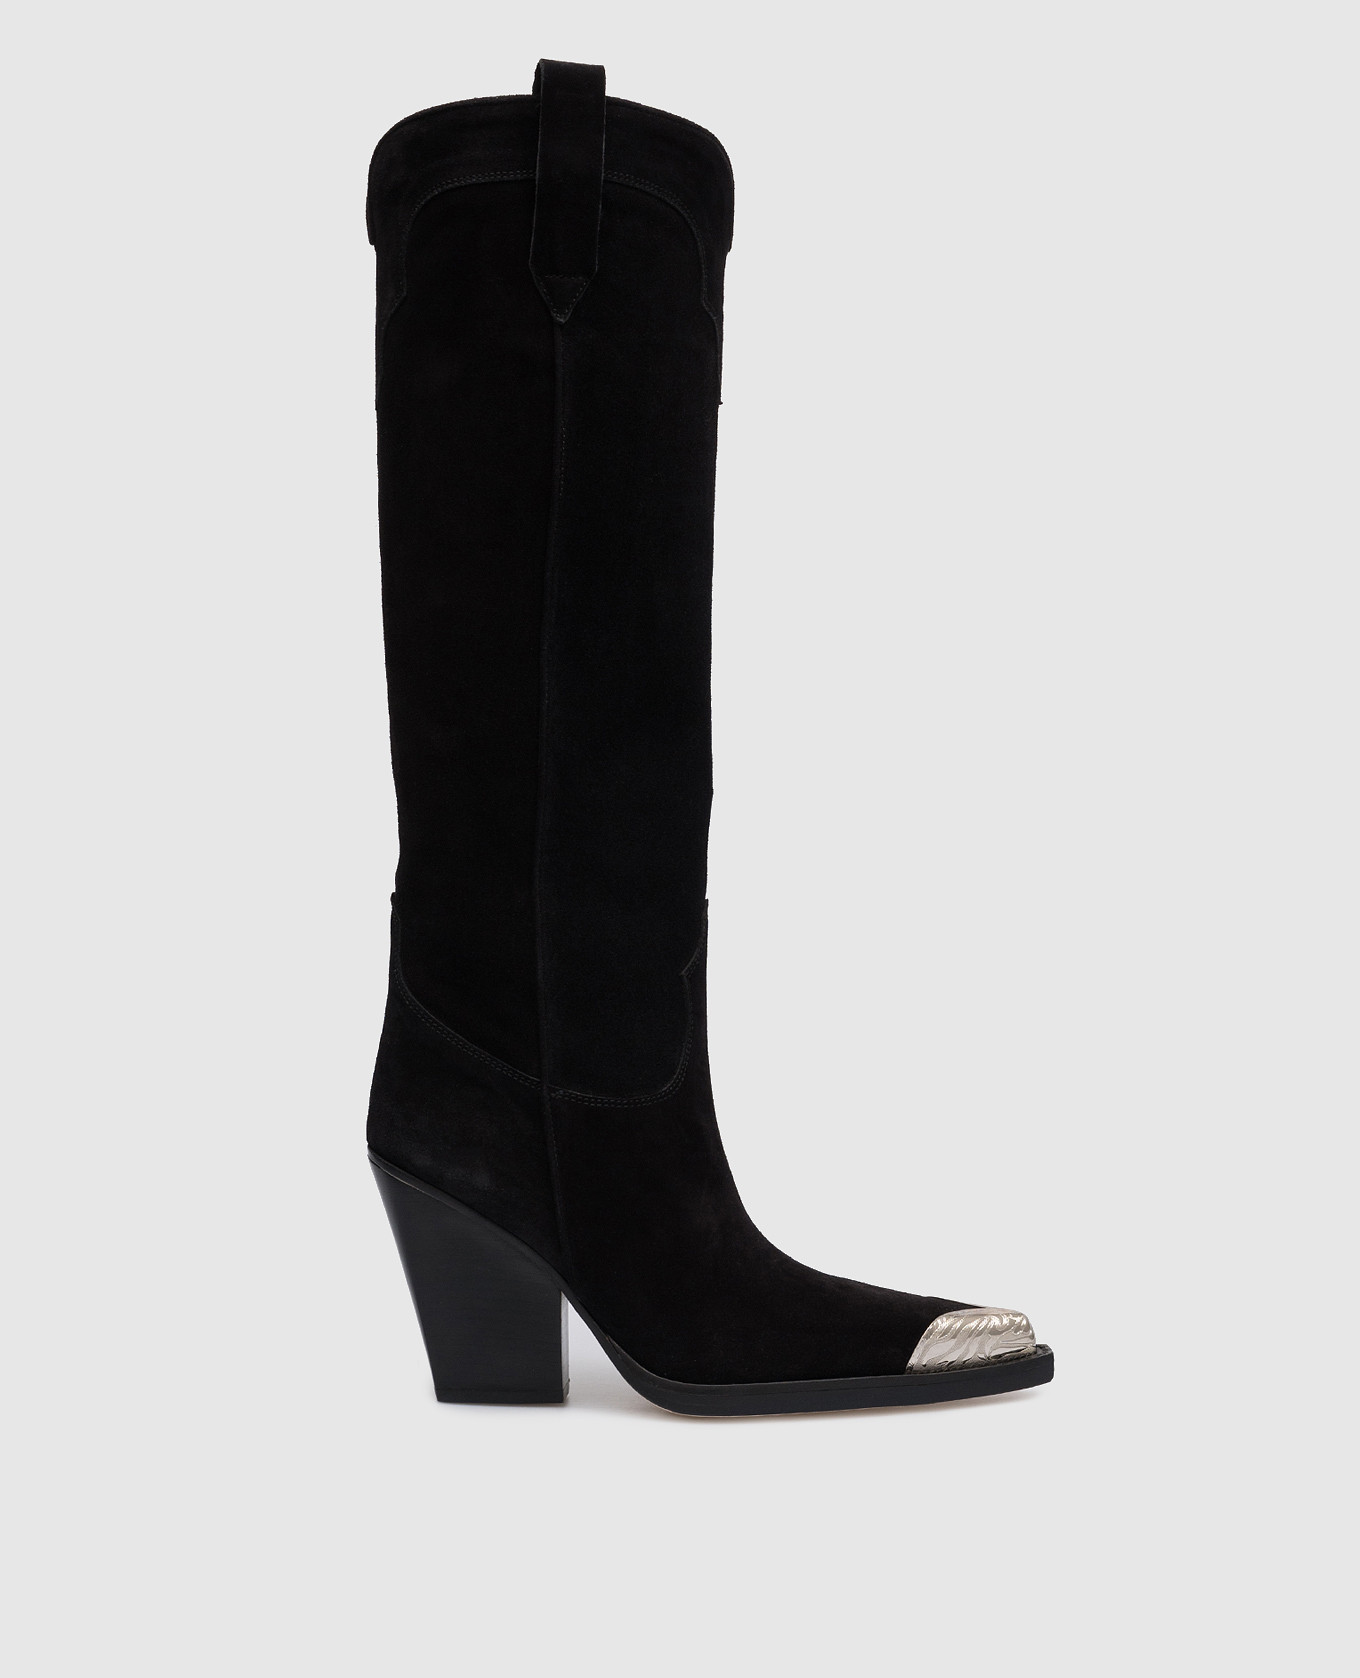 El Dorado black suede boots with metallic trim